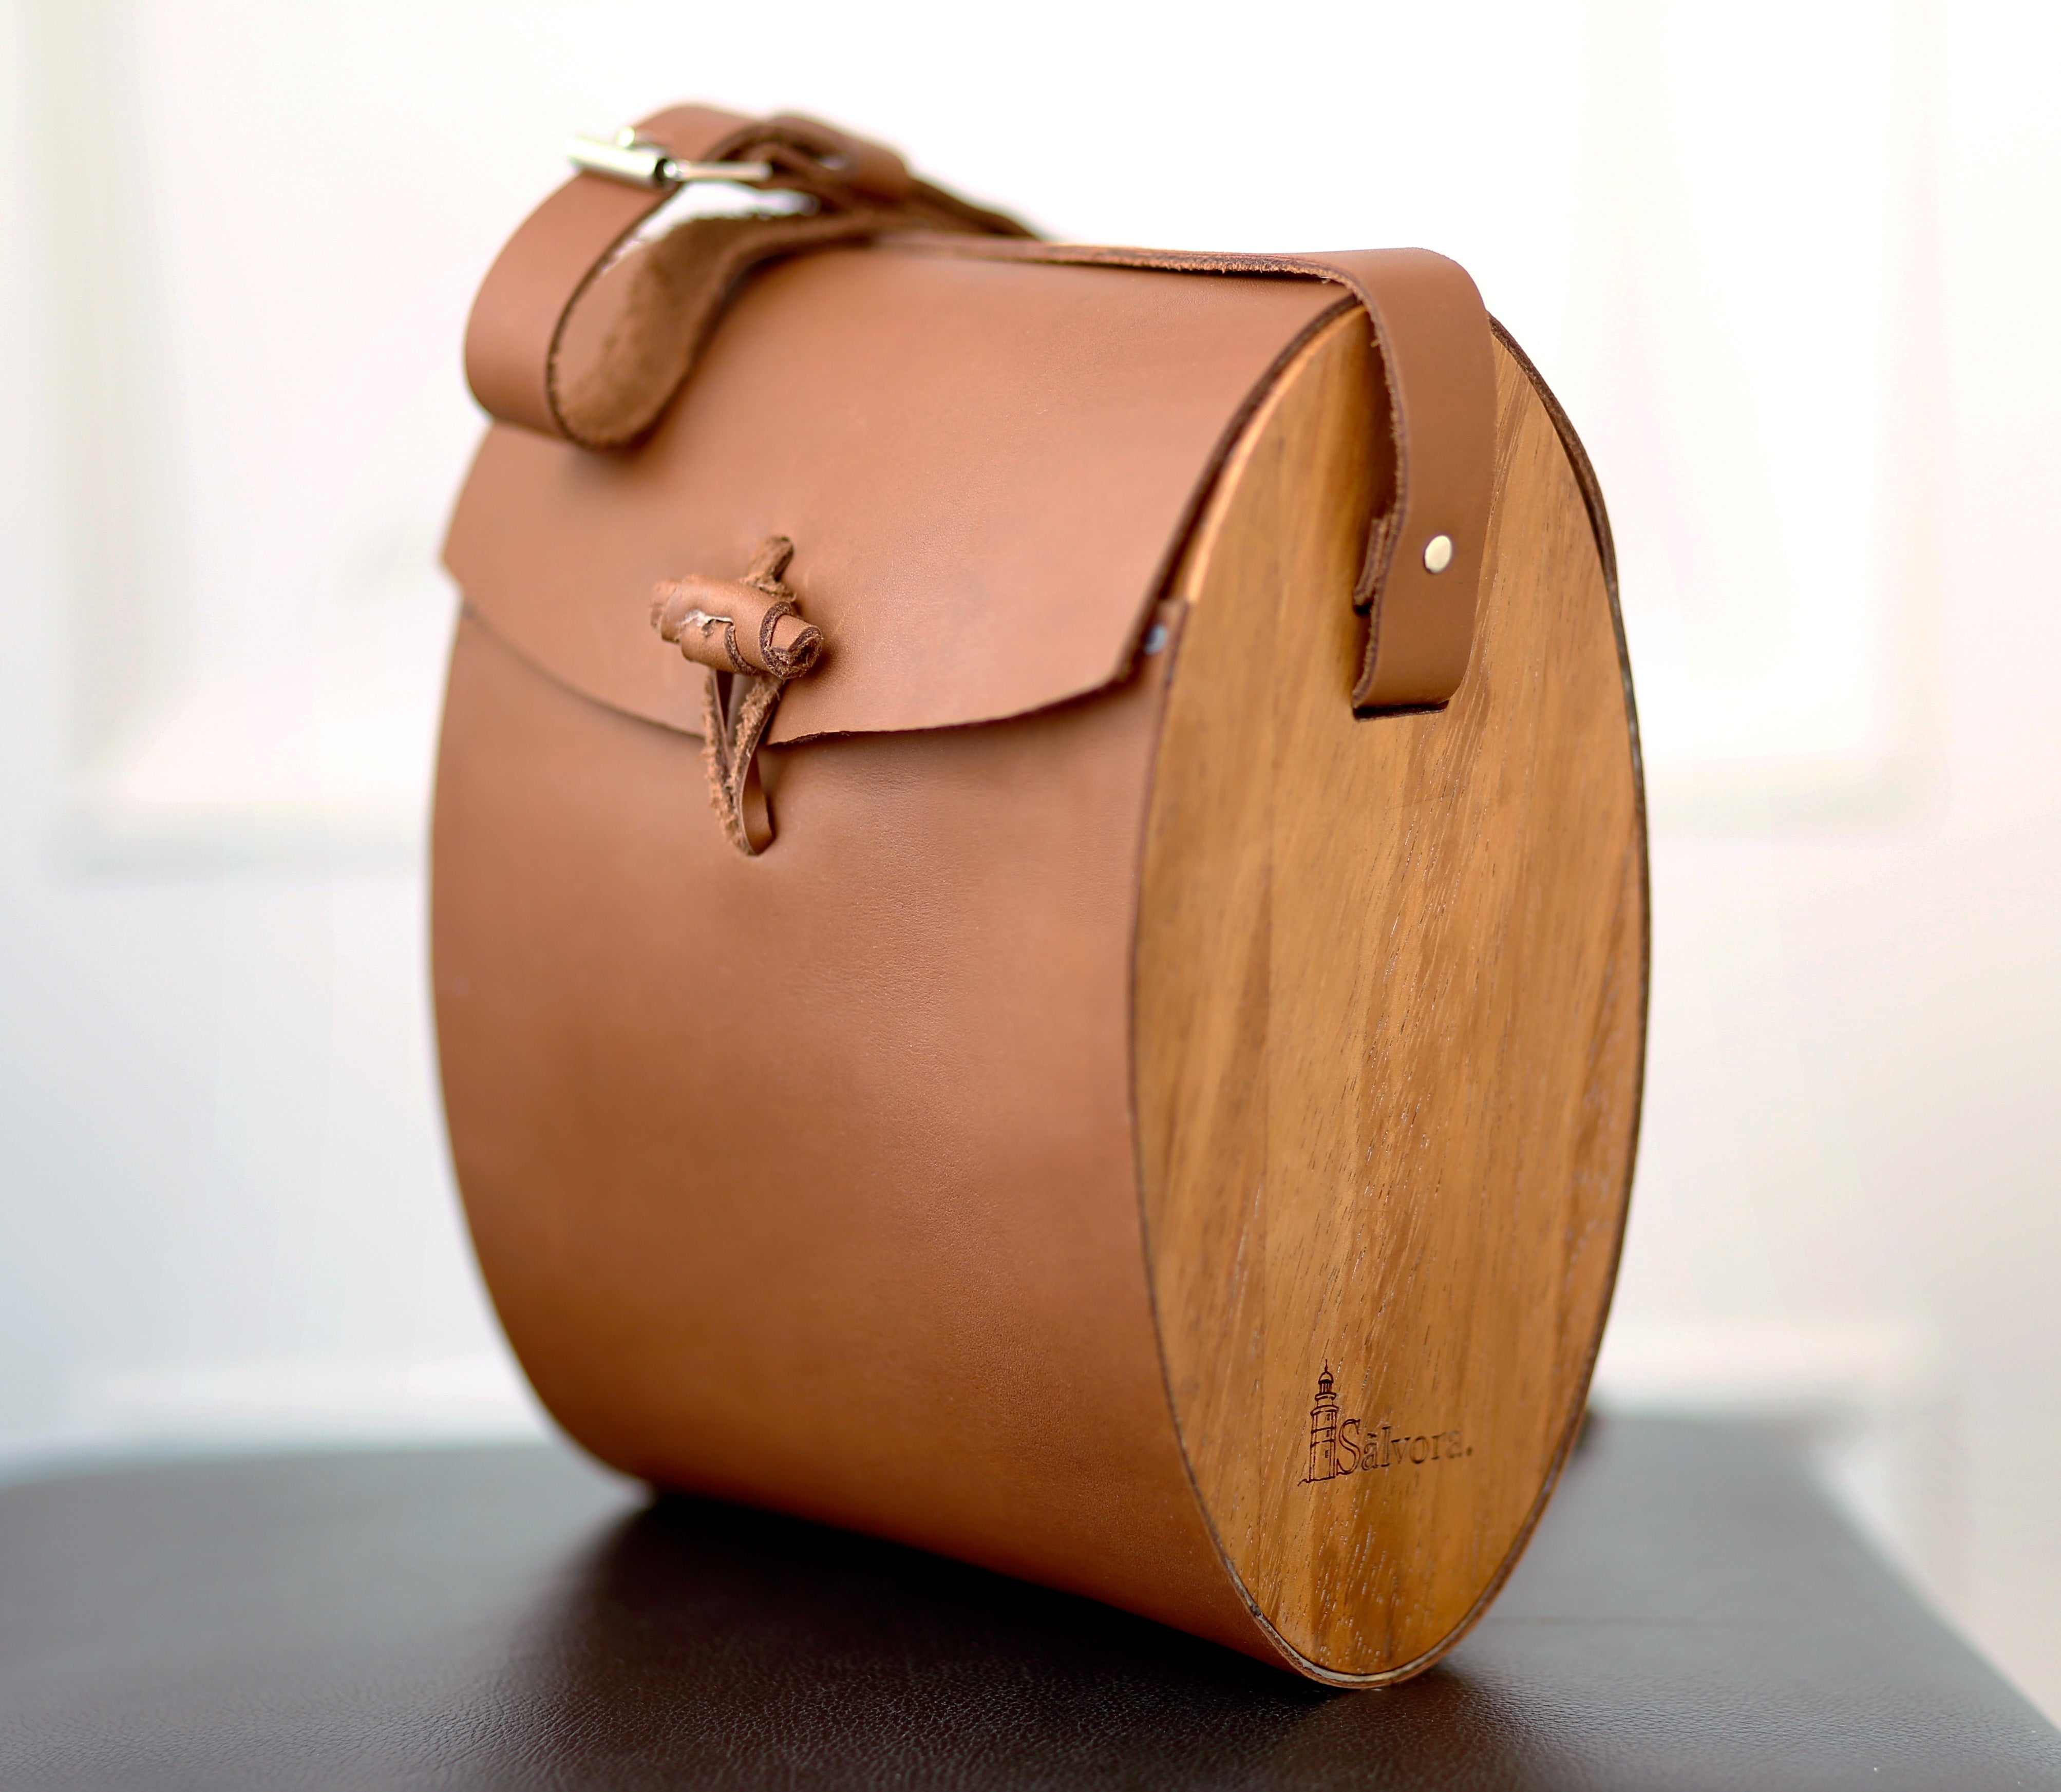 Leather and wood bag or boho crossbody bag, Handbag premium bag, Clutch bag,  Cross body ethical fashion bag